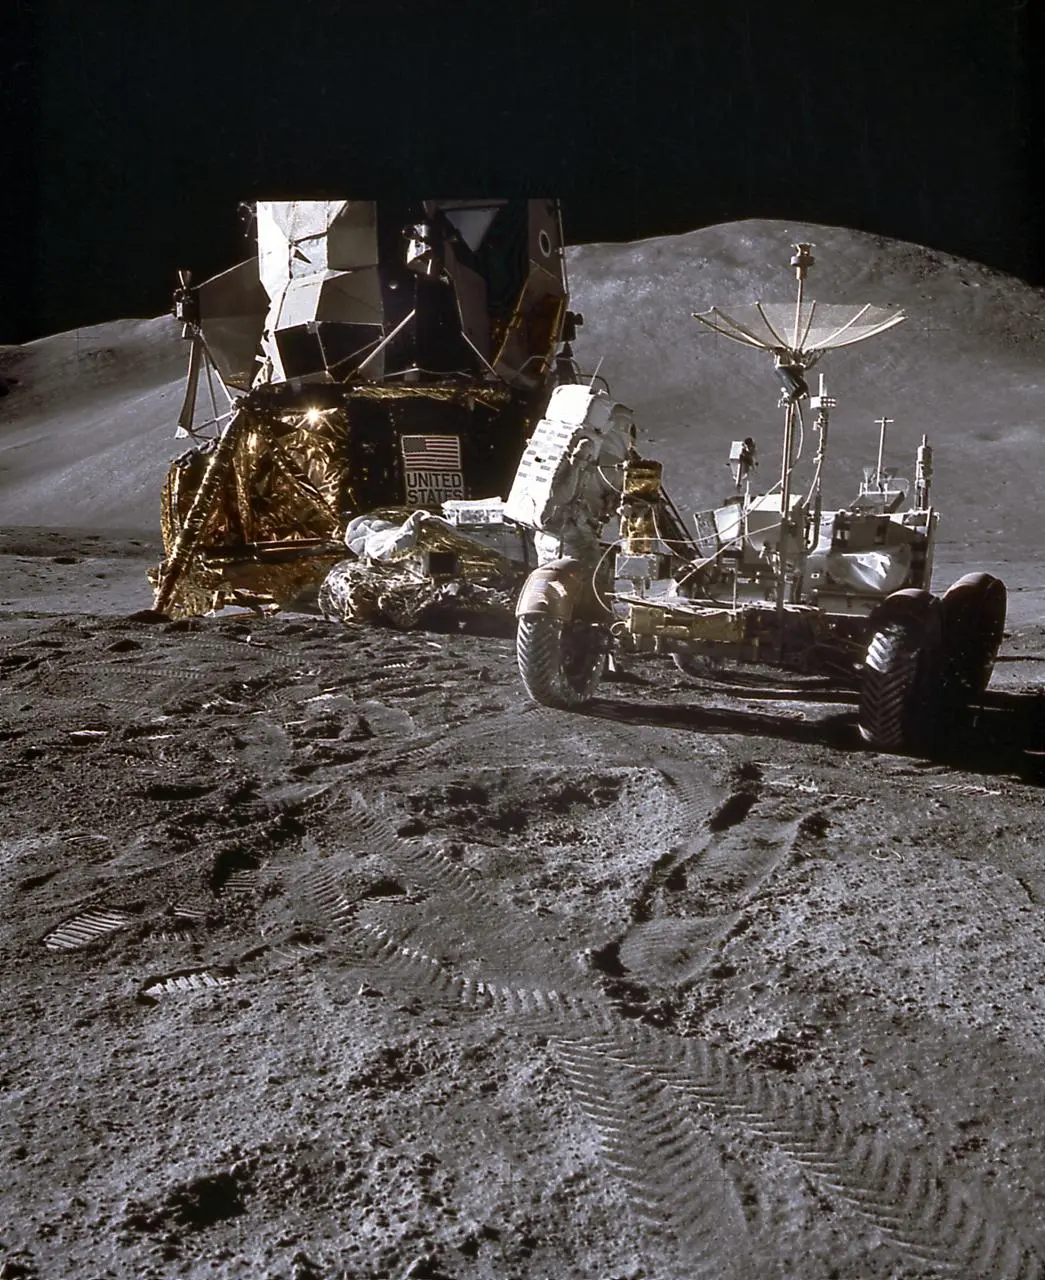 在月球上开车:阿波罗15号任务中的月球车_荒原之梦